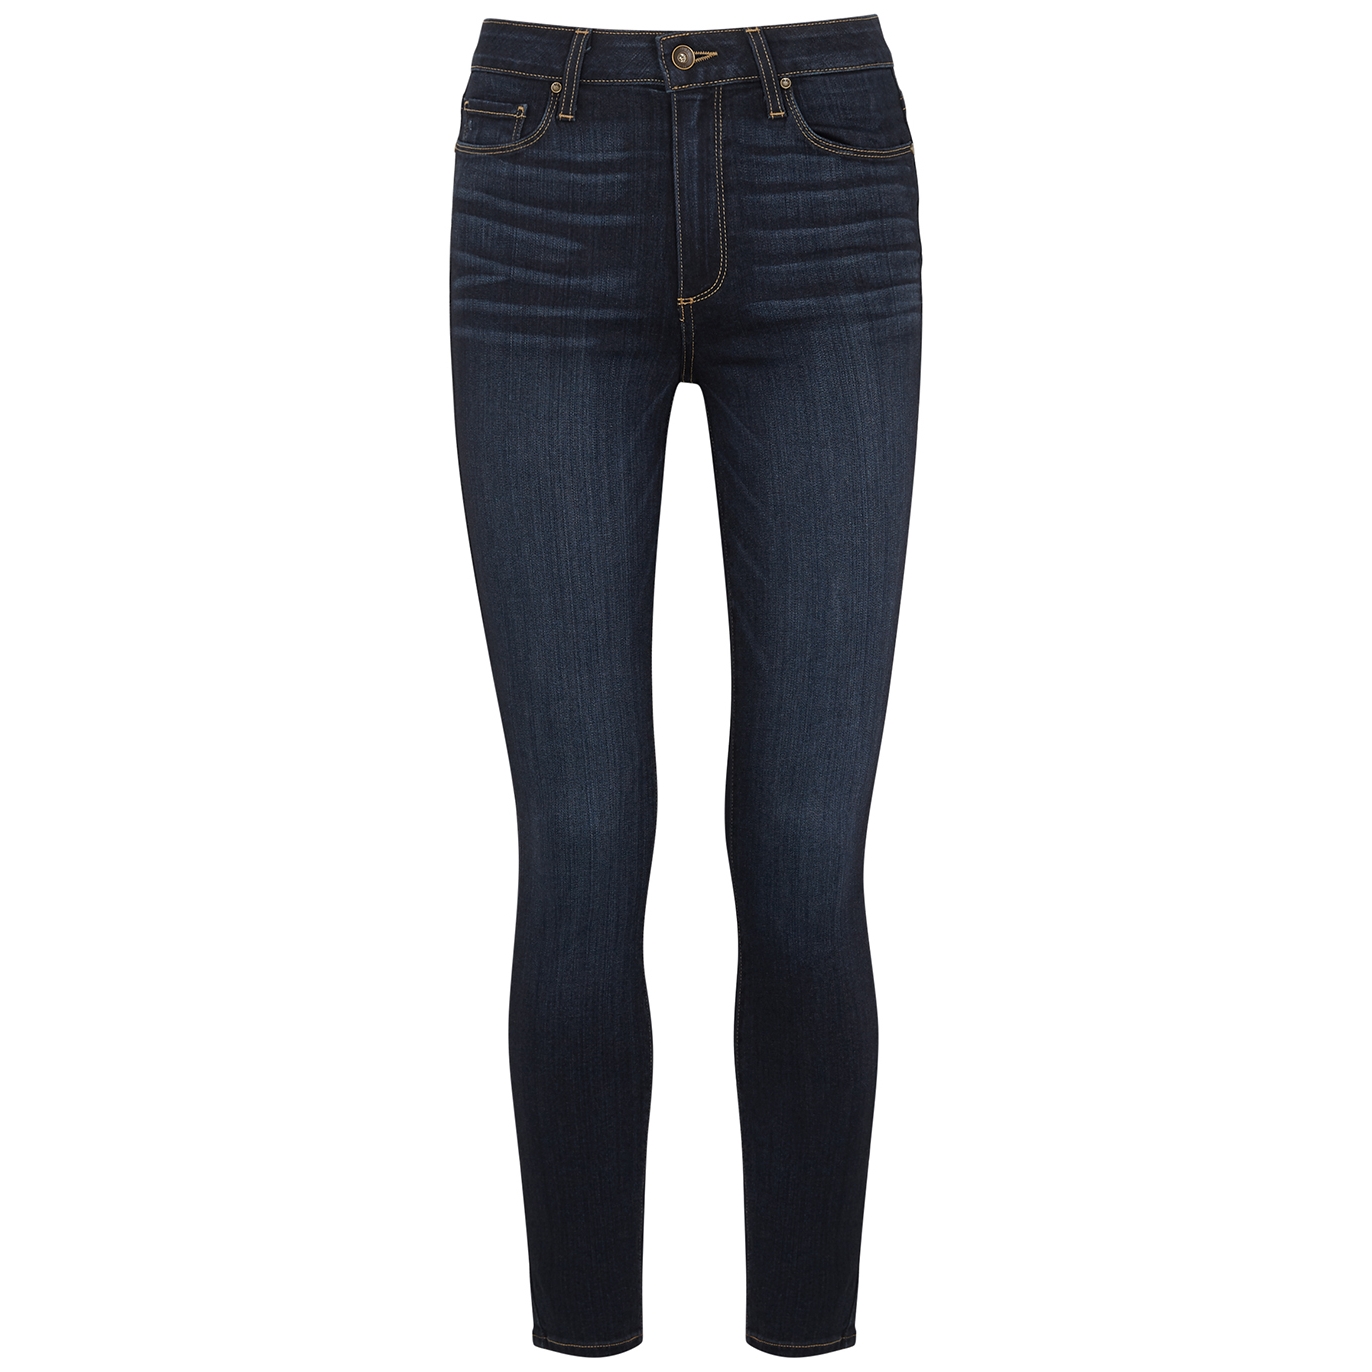 Paige Hoxton Ankle Indigo Skinny Jeans - Dark Blue - W27